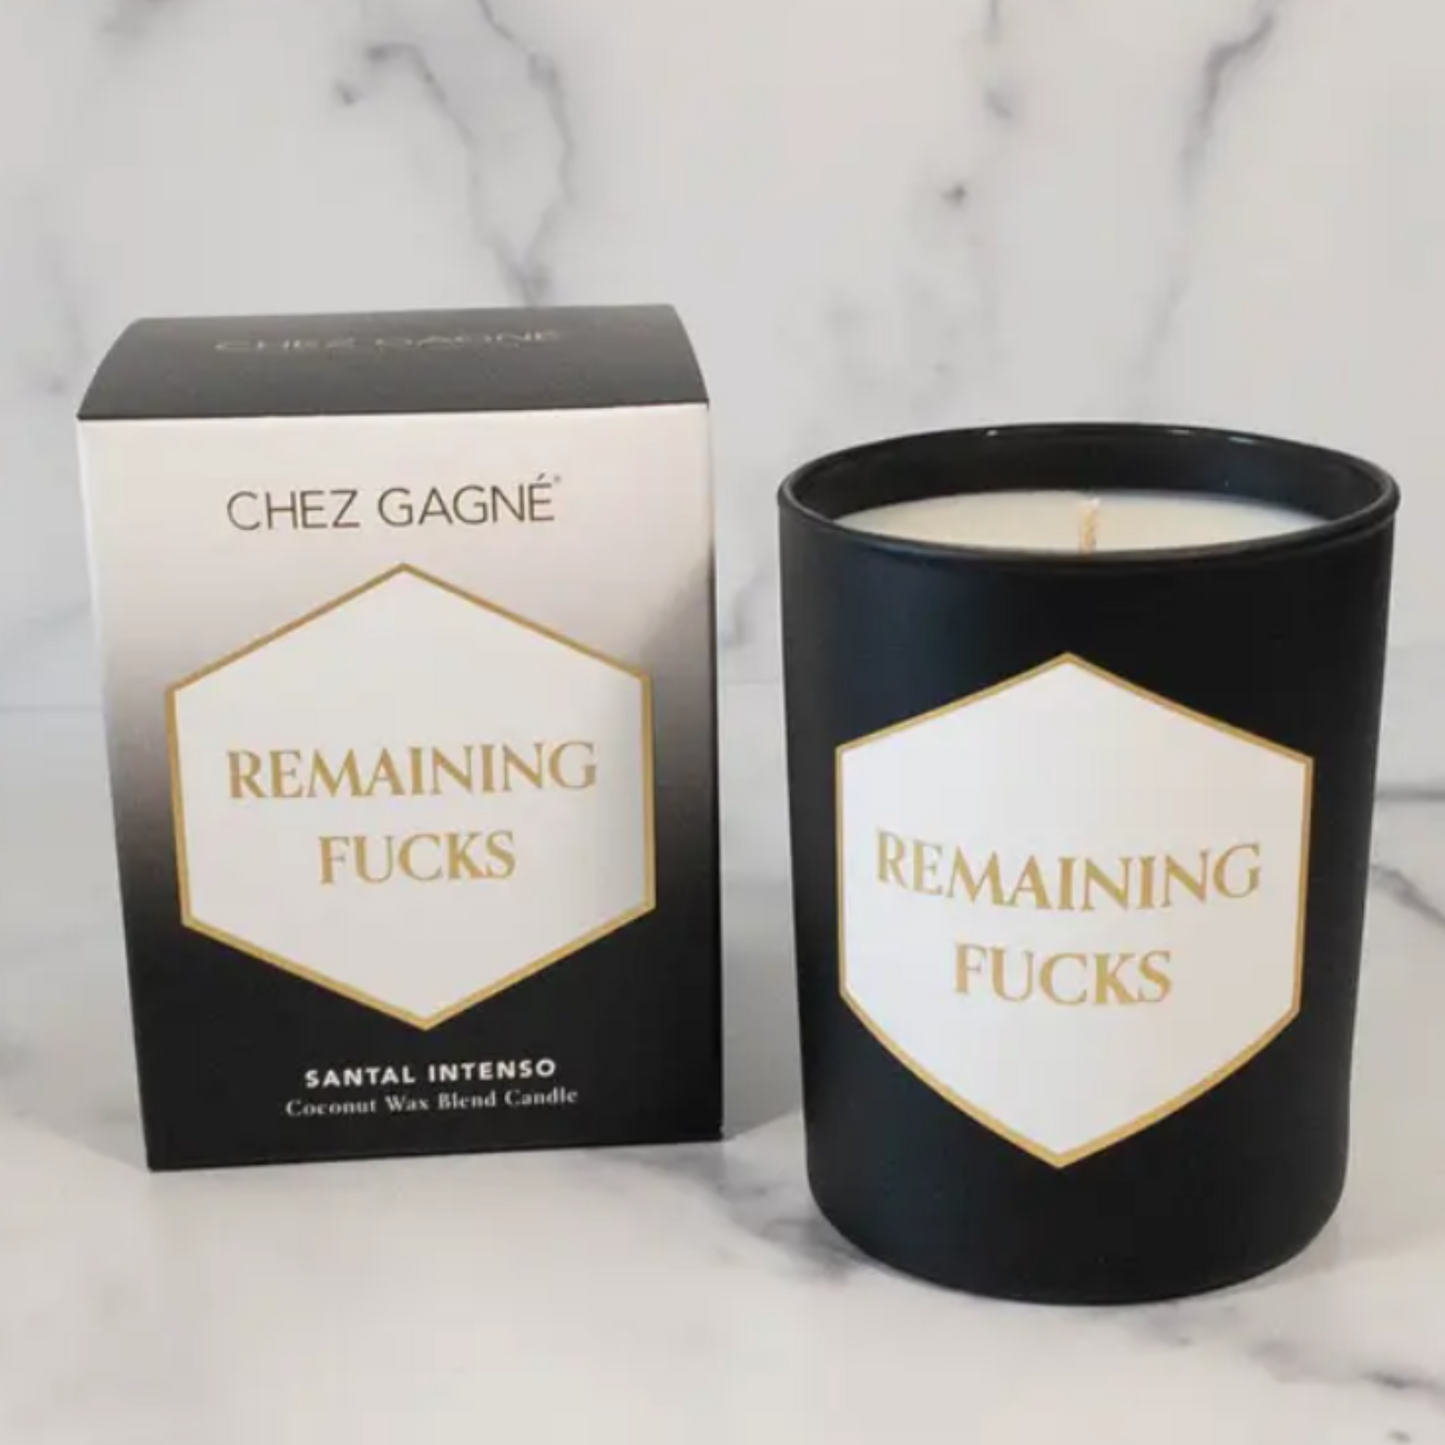 Remaining Fucks! Candle